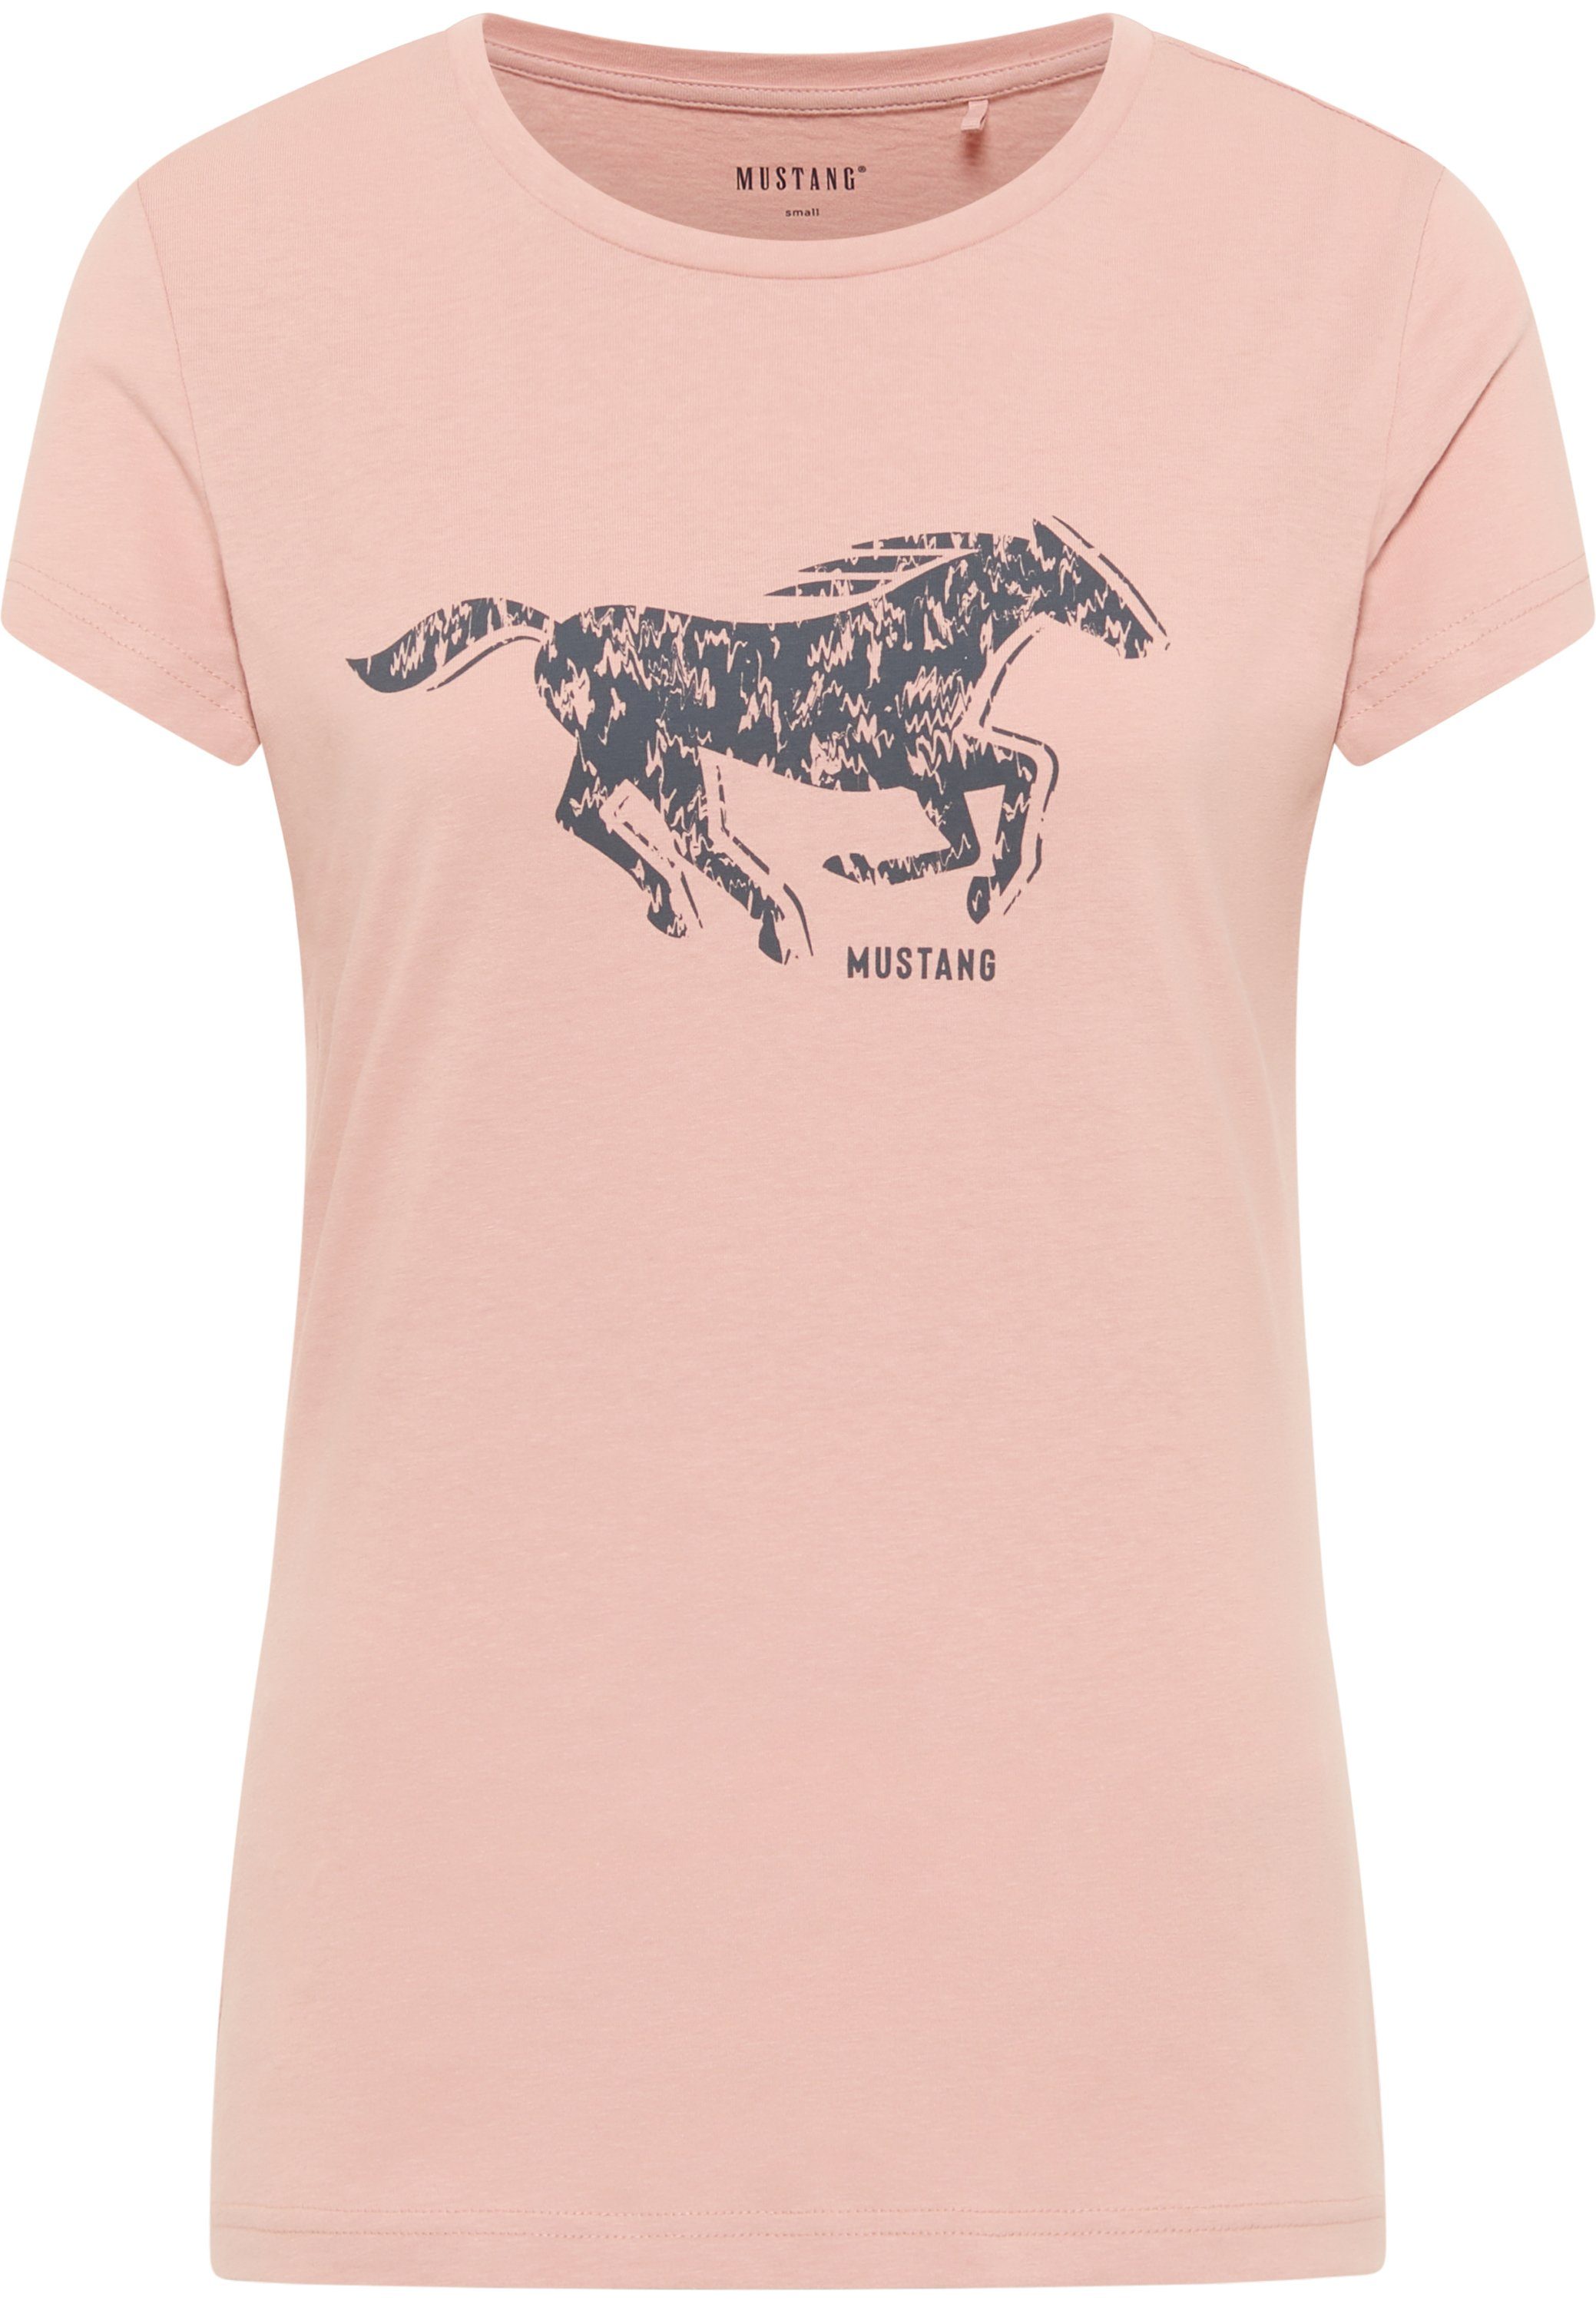 Kurzarmshirt Mustang T-Shirt MUSTANG Print-Shirt hellrosa